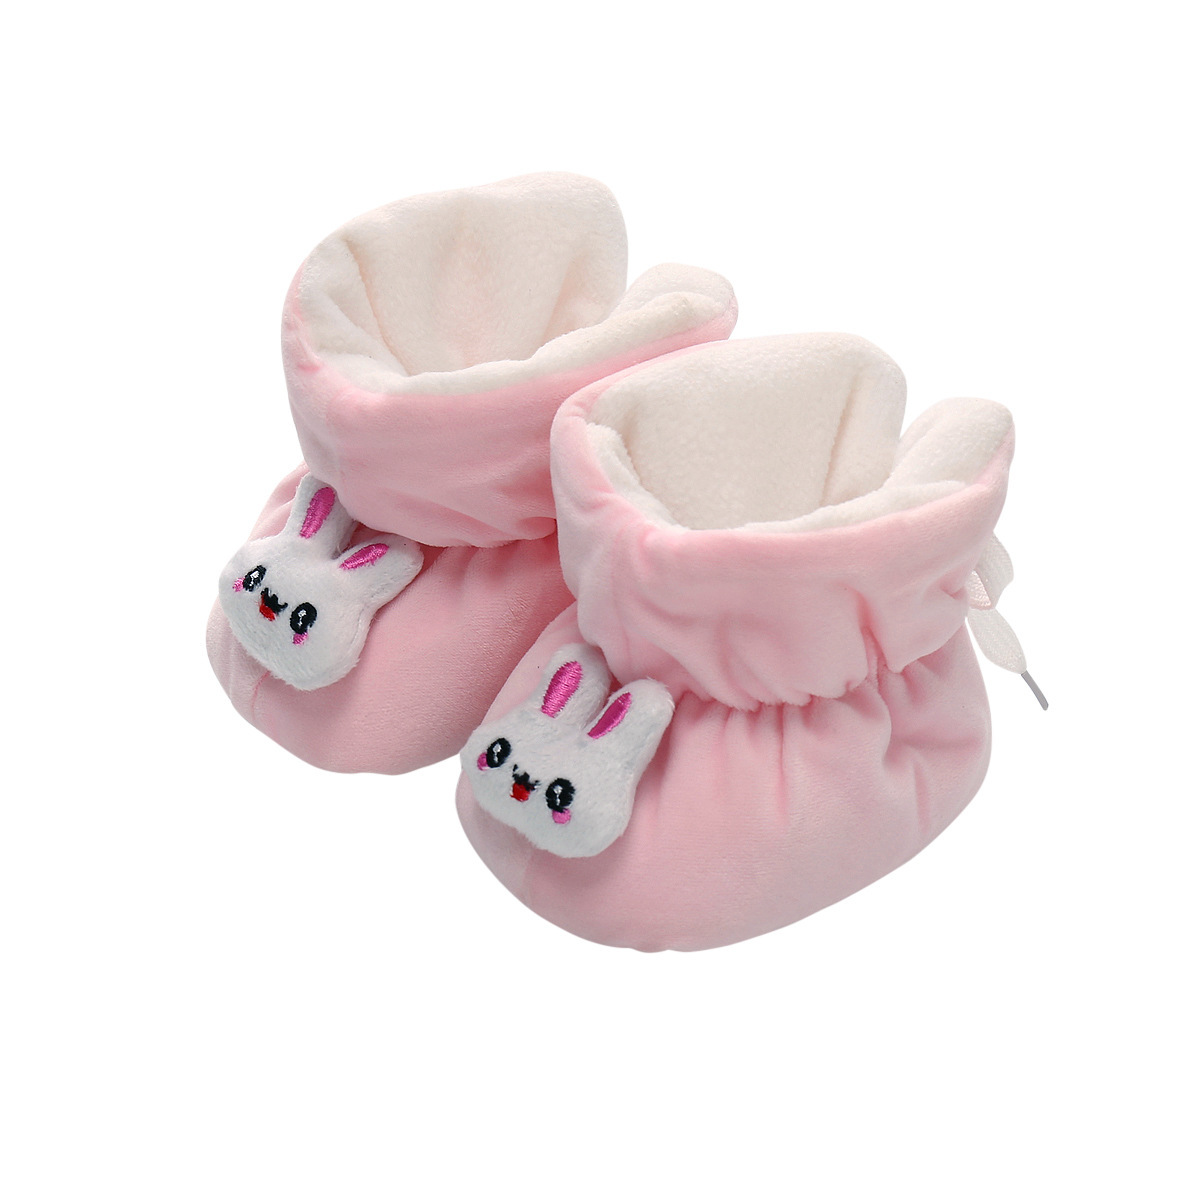 Chaussures bébé en Polaire corail polaire - Ref 3436910 Image 2